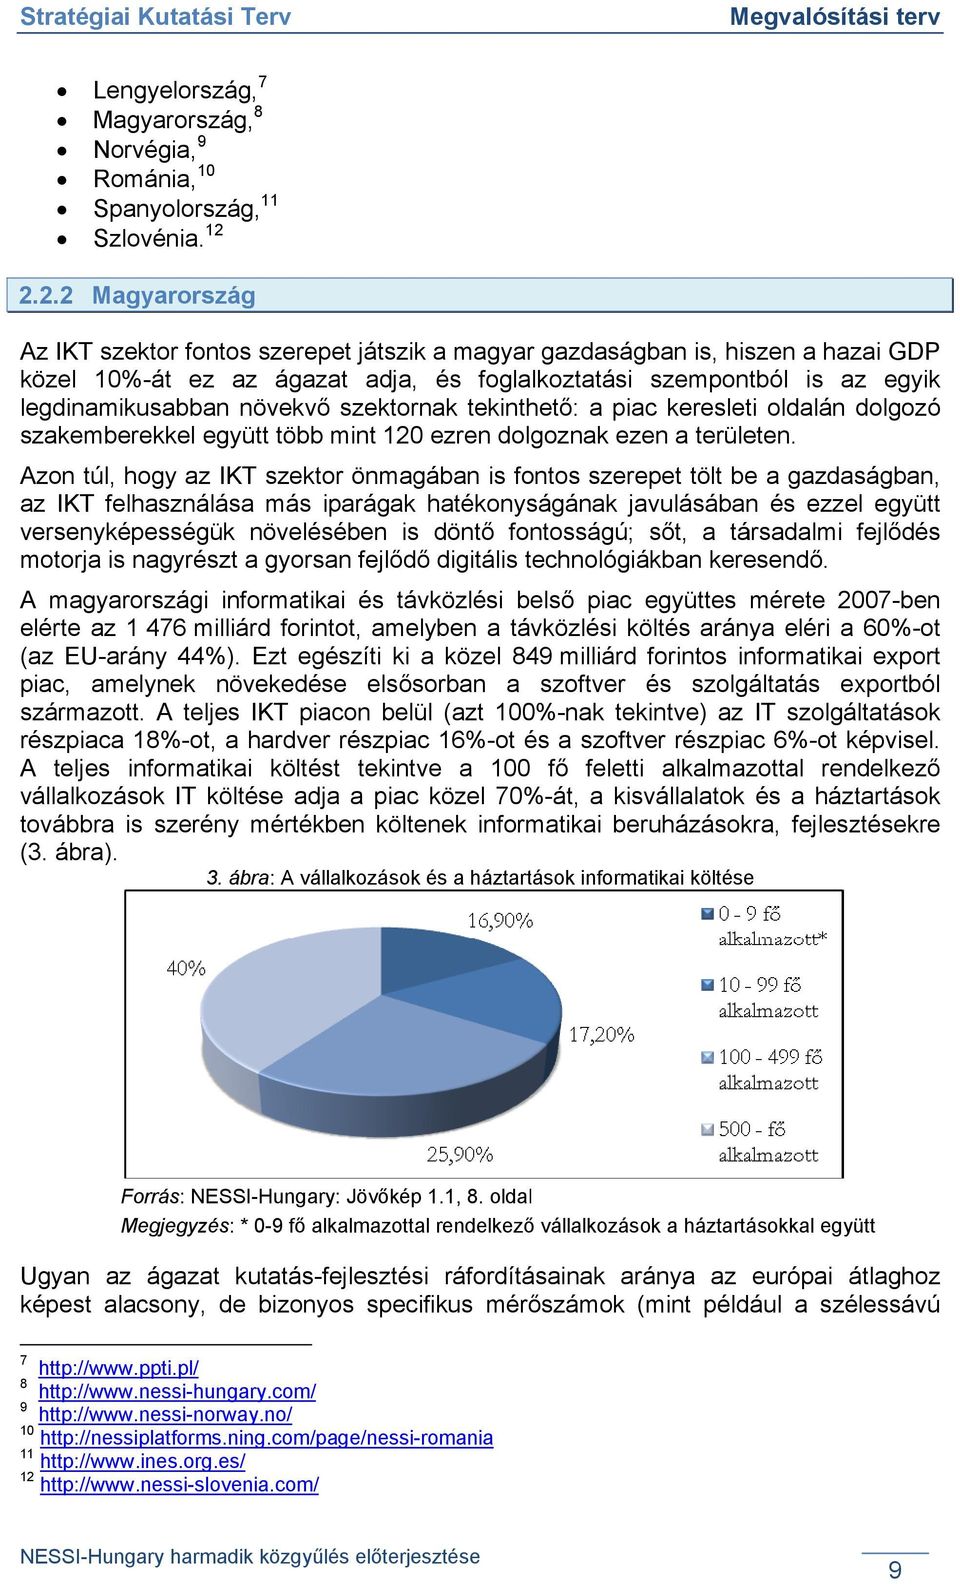 2.2 Magyarország Az IKT szektor fontos szerepet játszik a magyar gazdaságban is, hiszen a hazai GDP közel 10%-át ez az ágazat adja, és foglalkoztatási szempontból is az egyik legdinamikusabban